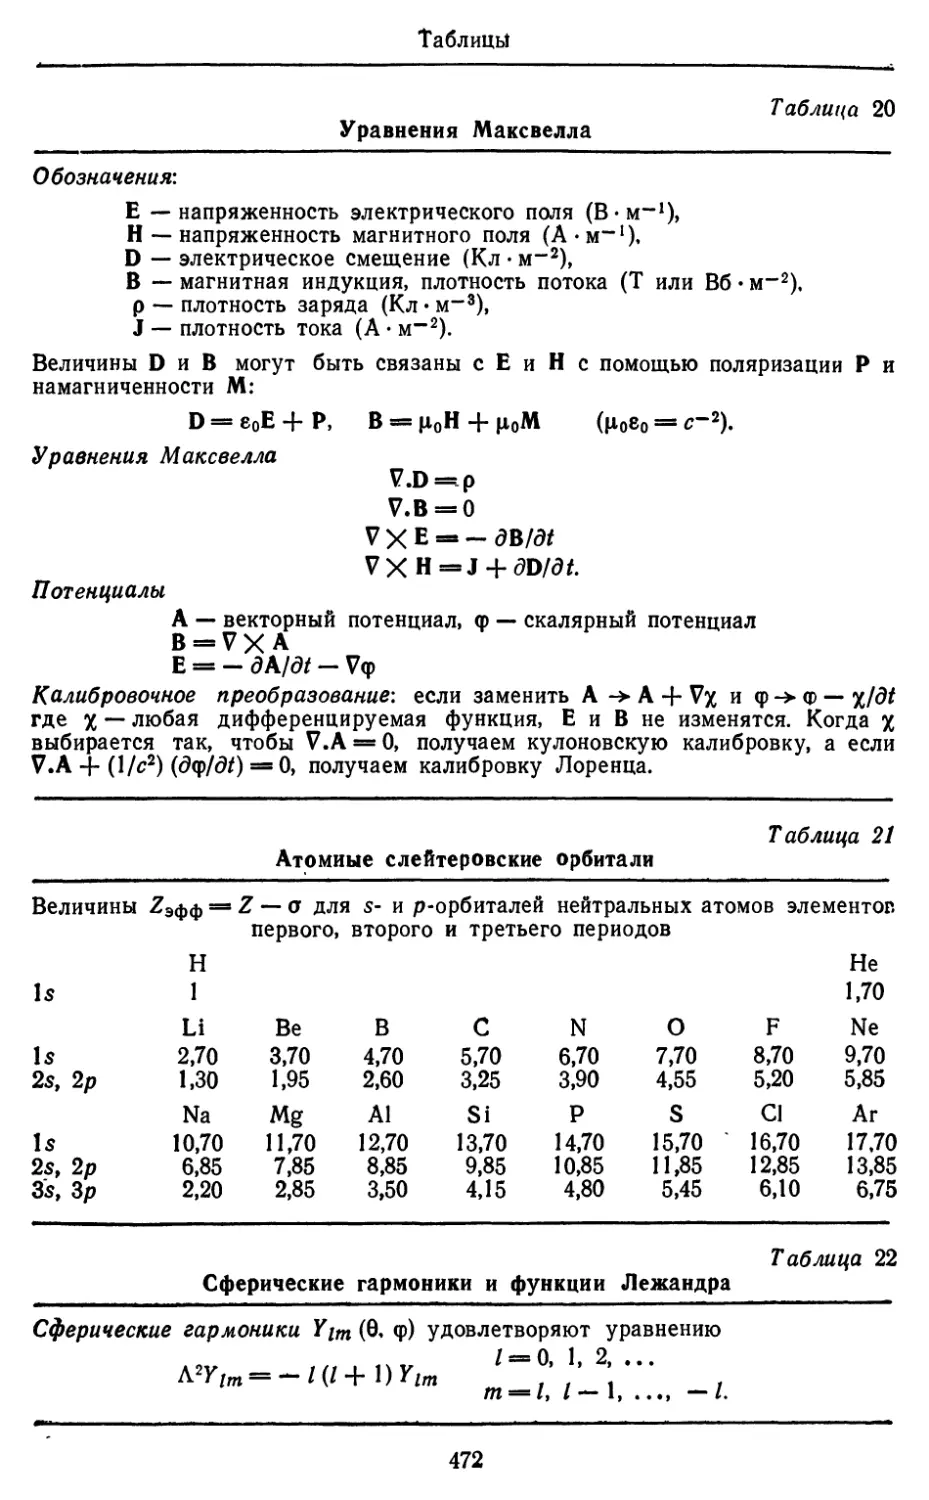 Уравнения Максвелла
Атомные слейтеровские орбитали
Сферические гармоники и функции Лежандра